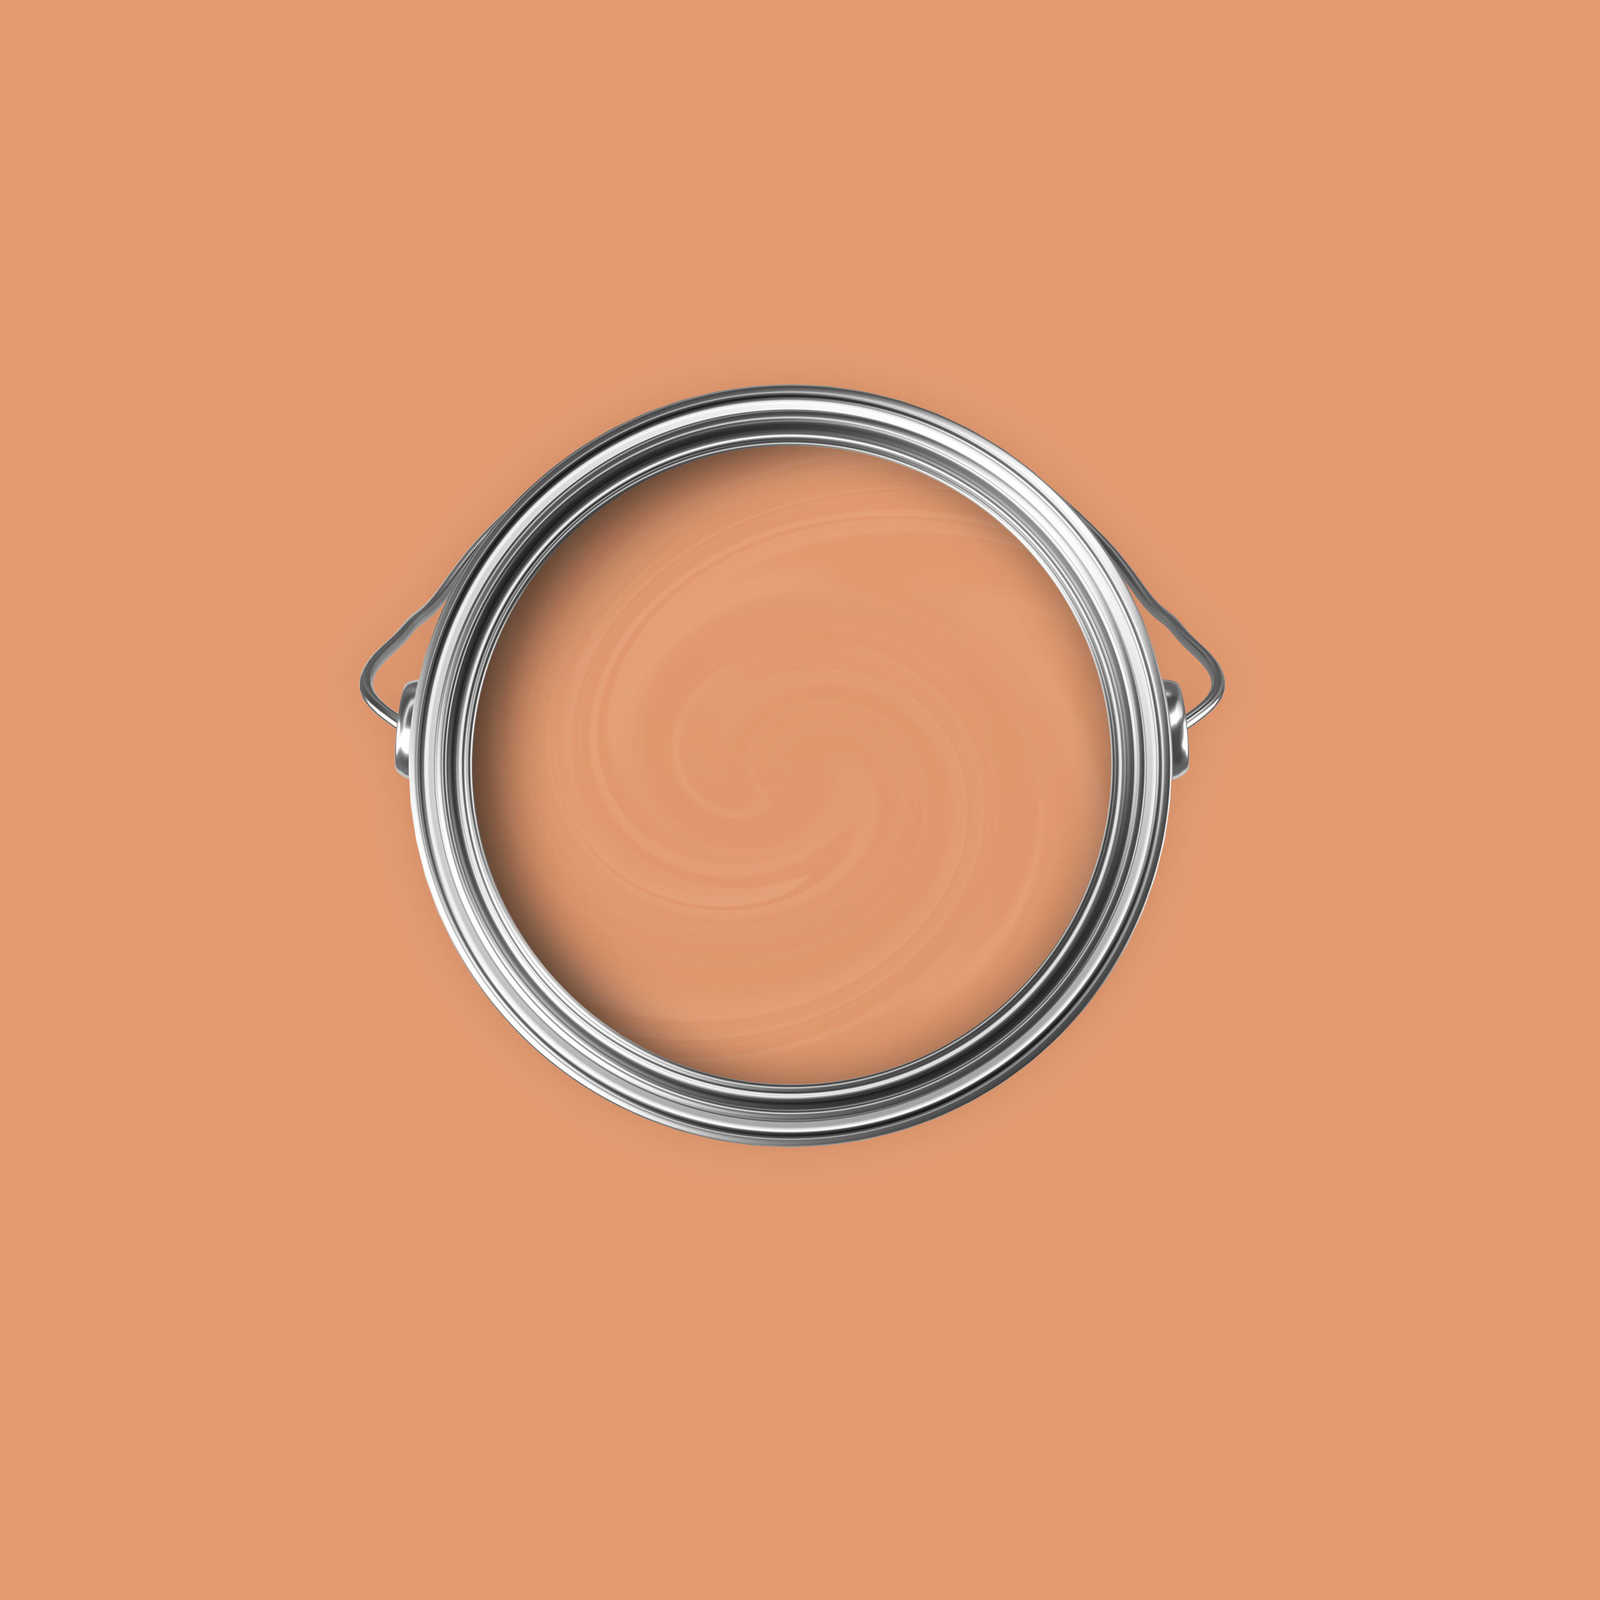             Premium Wandfarbe erfrischendes Apricot »Pretty Peach« NW902 – 2,5 Liter
        